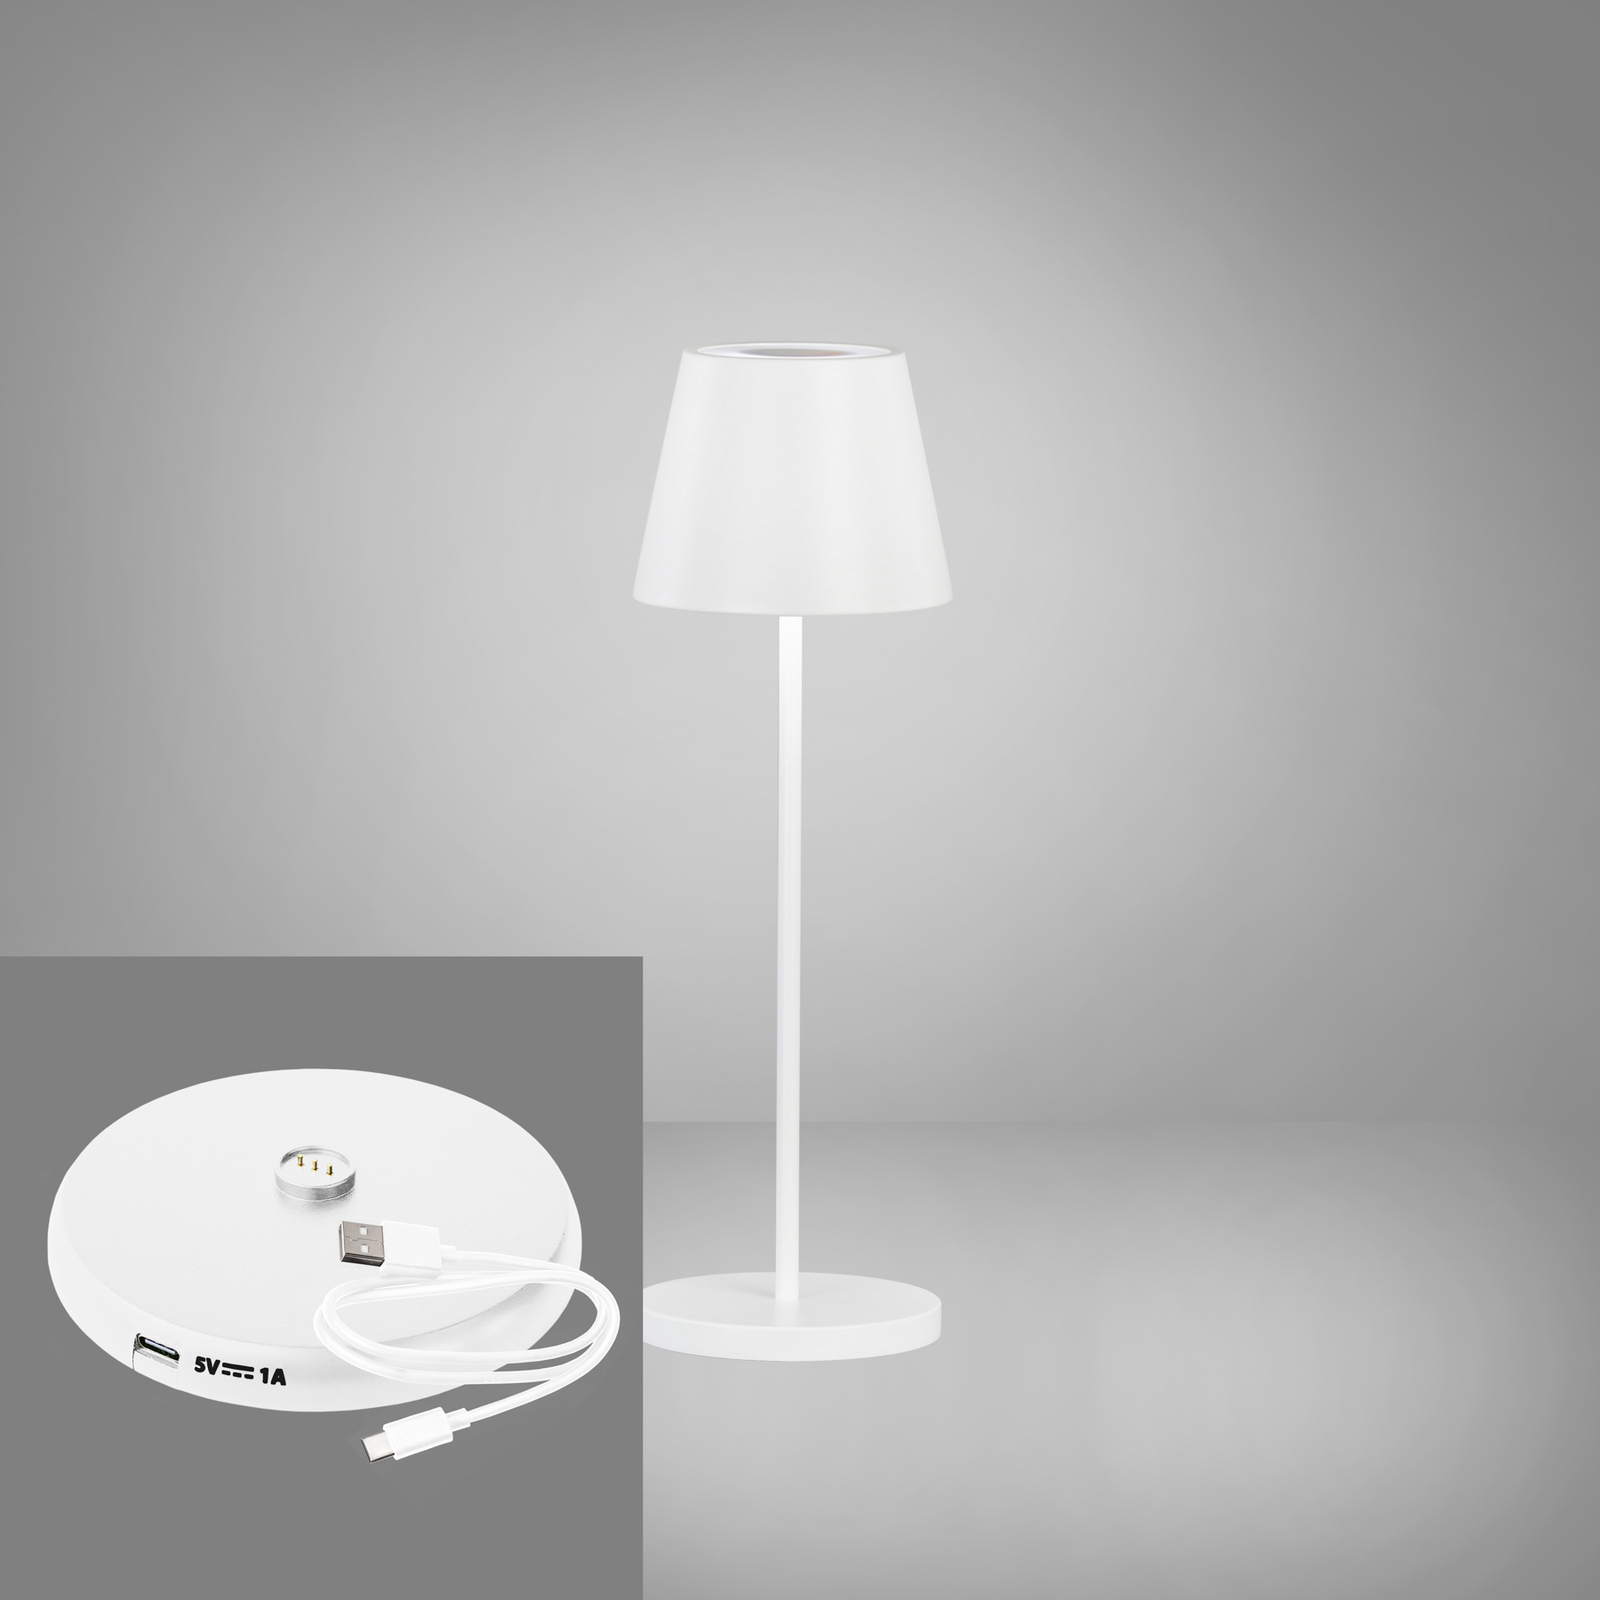 Lampe batterie LED Cosenza 2.0, 34 cm blanc sable